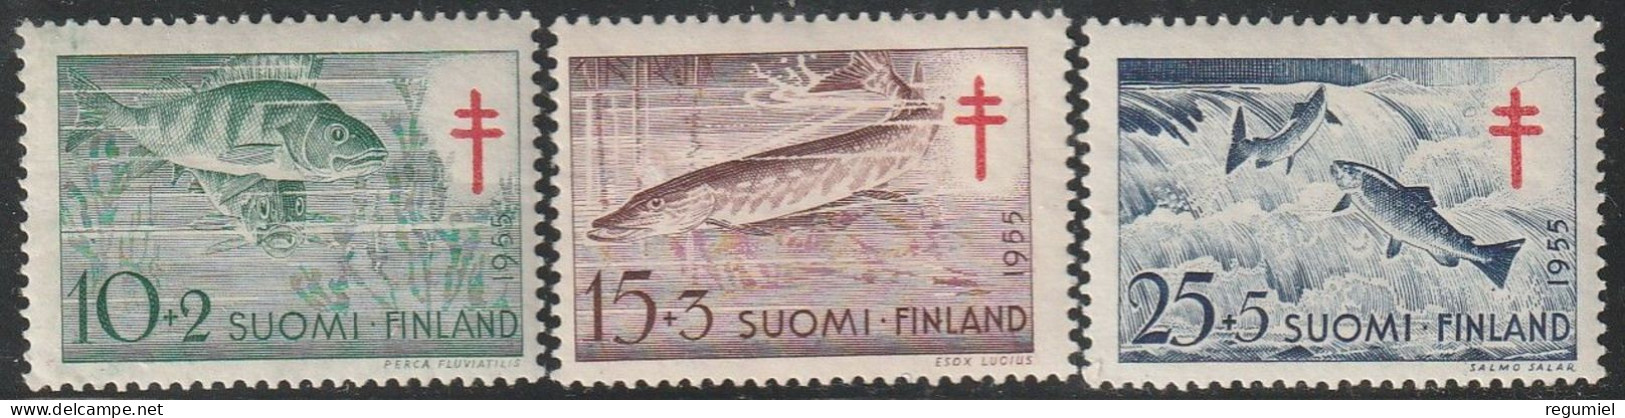 Finlandia 0426/428 ** MNH. 1955 - Nuevos